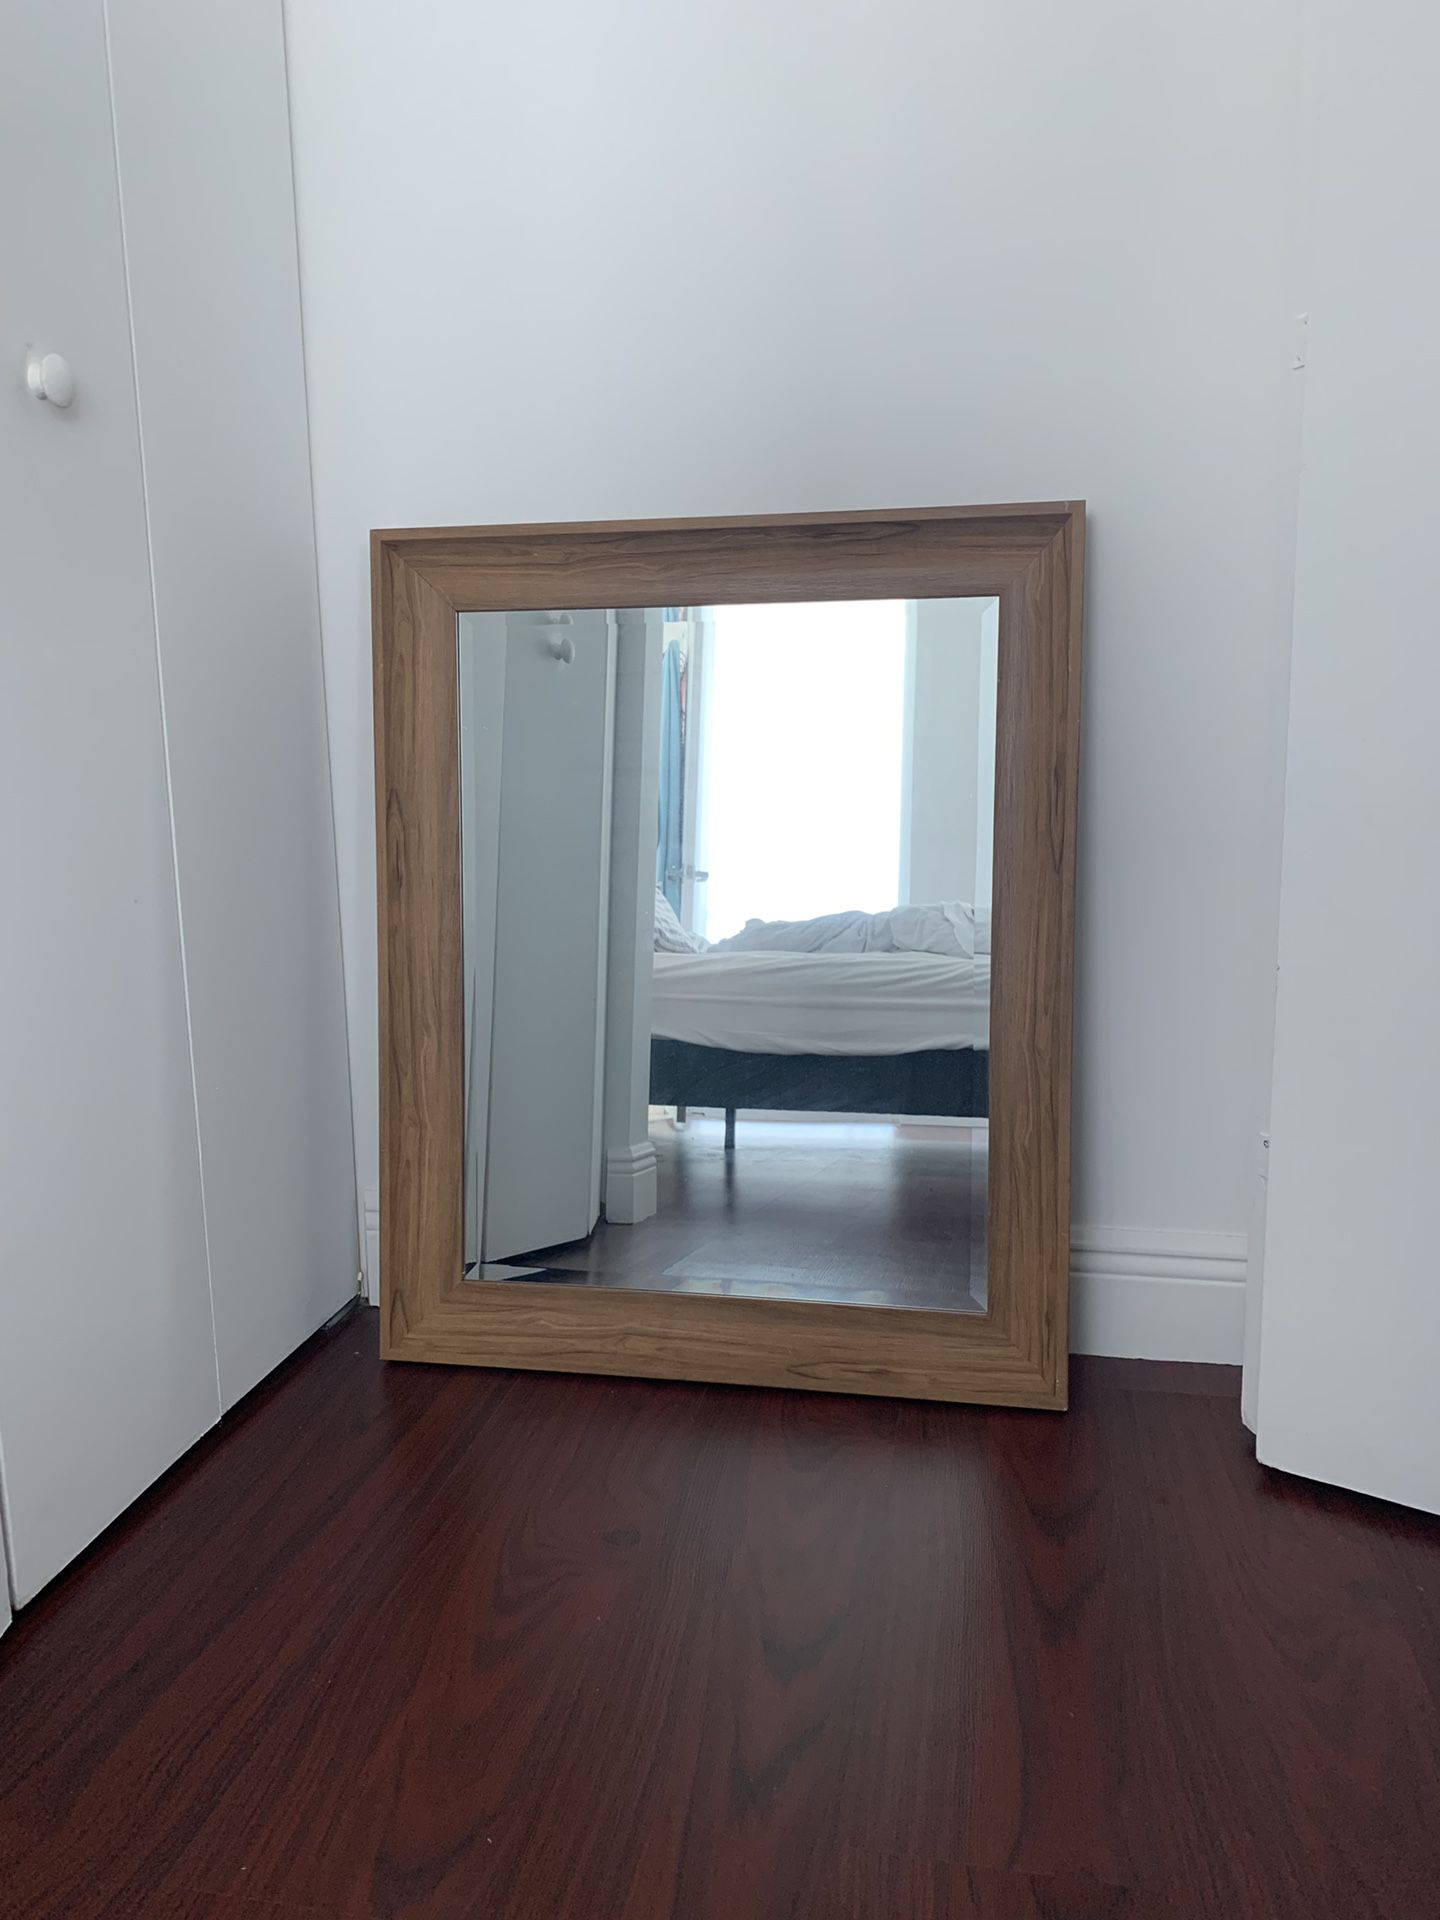 Medium Wall Mirror